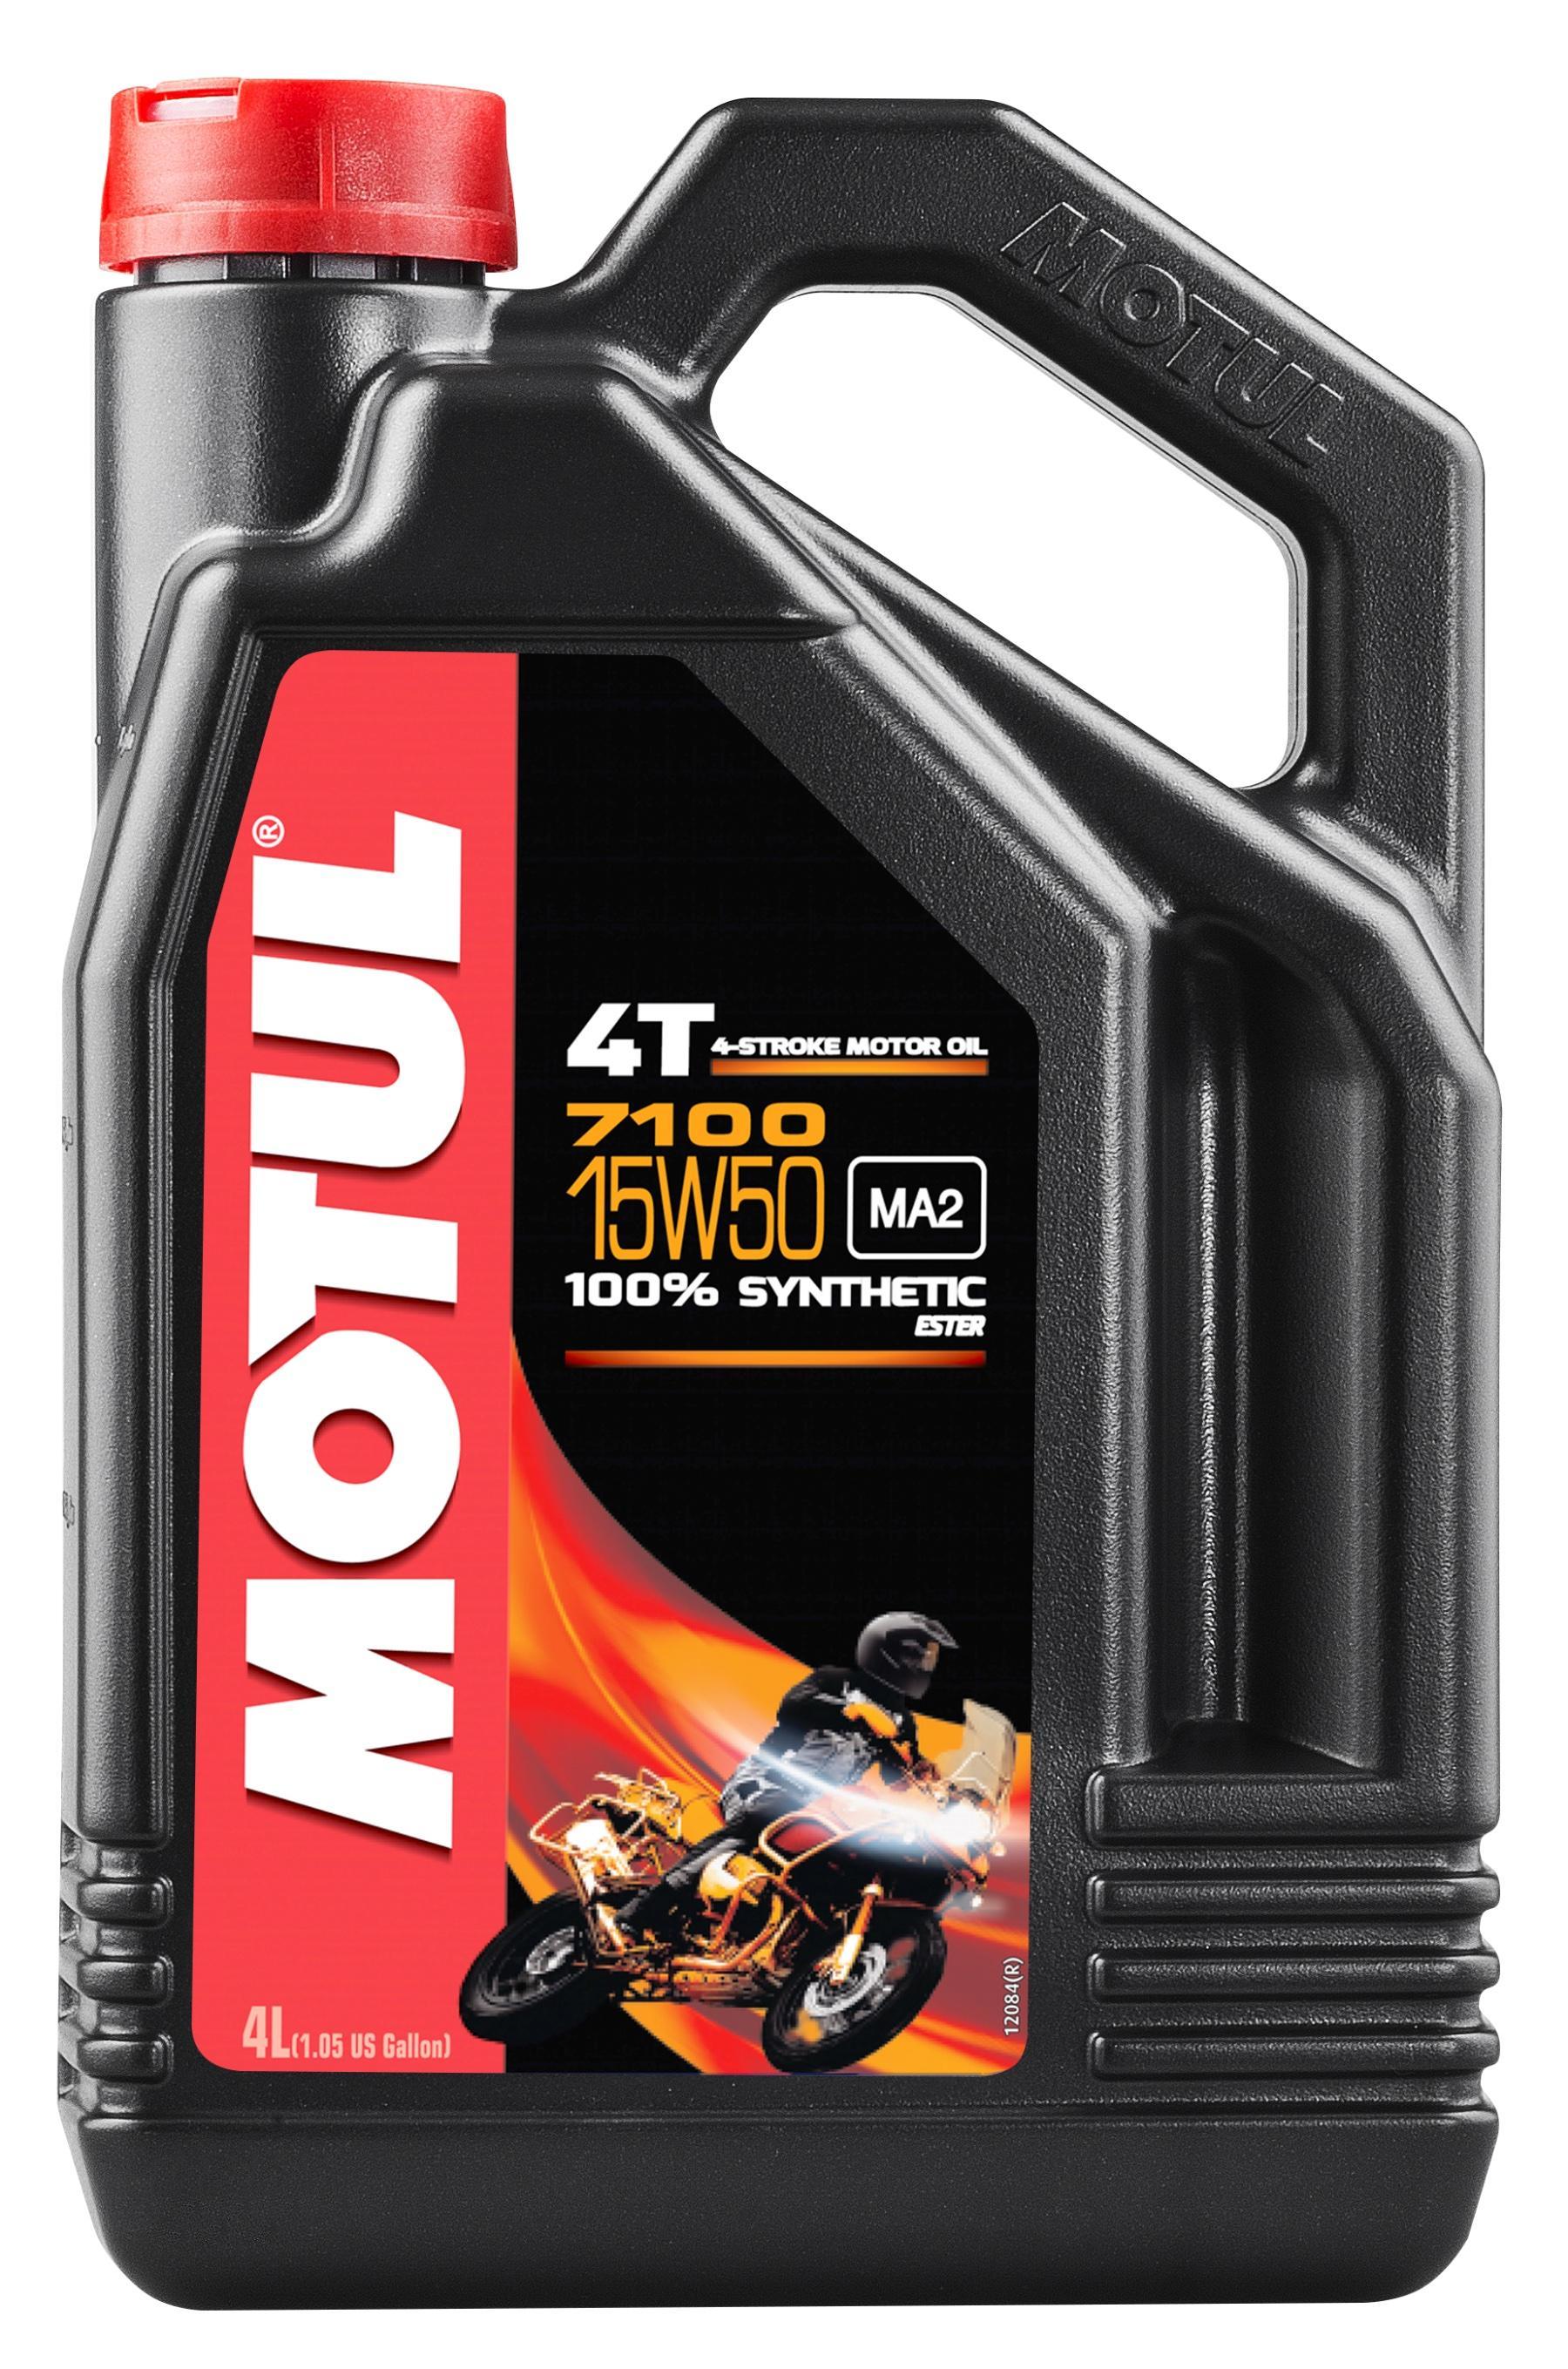 Моторное масло MOTUL 7100 4T 15W50, 4 литра 15W50 (845241 / 104299)